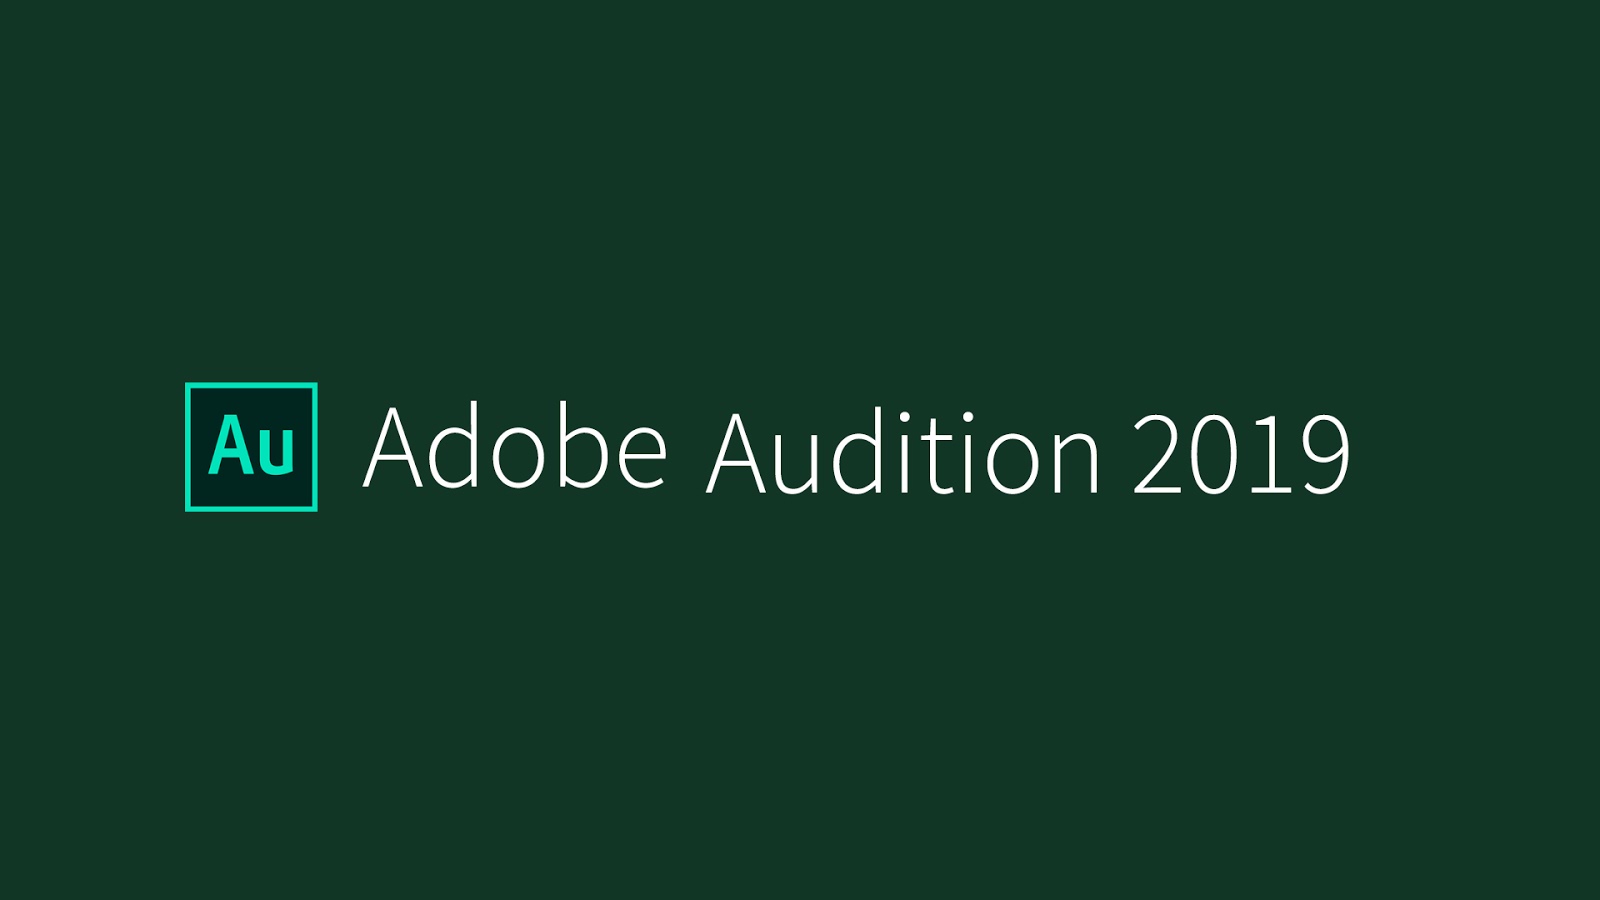 Hướng dẫn cài đặt Adobe Audition CC 2019 Full Active mới nhất